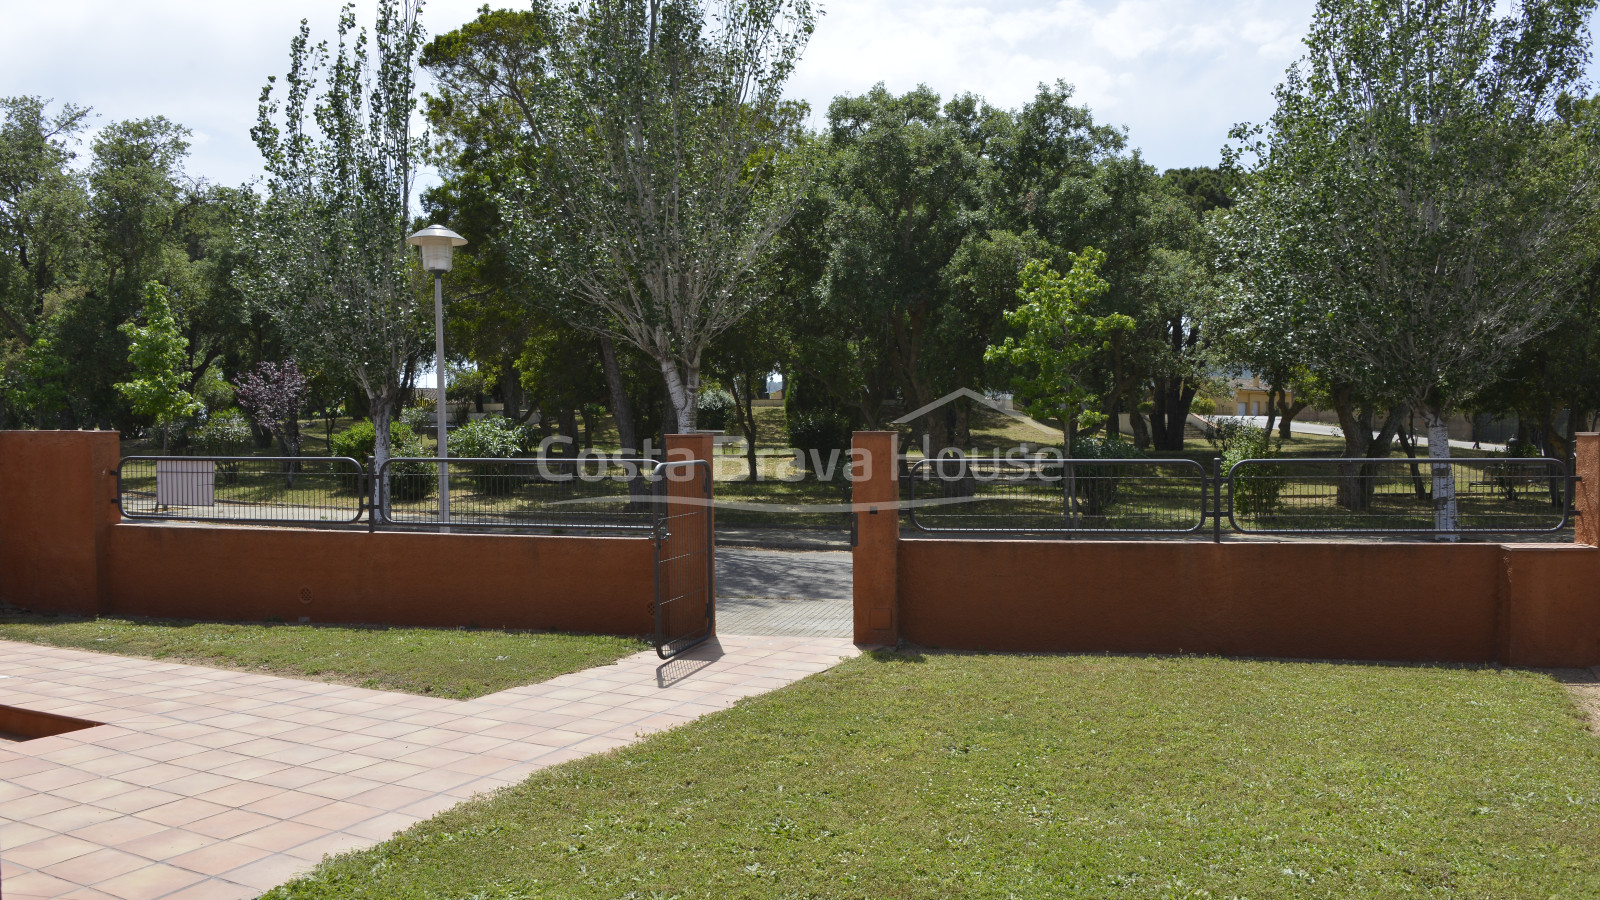 Casa per estrenar amb jardí i garatge en venda als afores de Palafrugell. Possibilitat de piscina